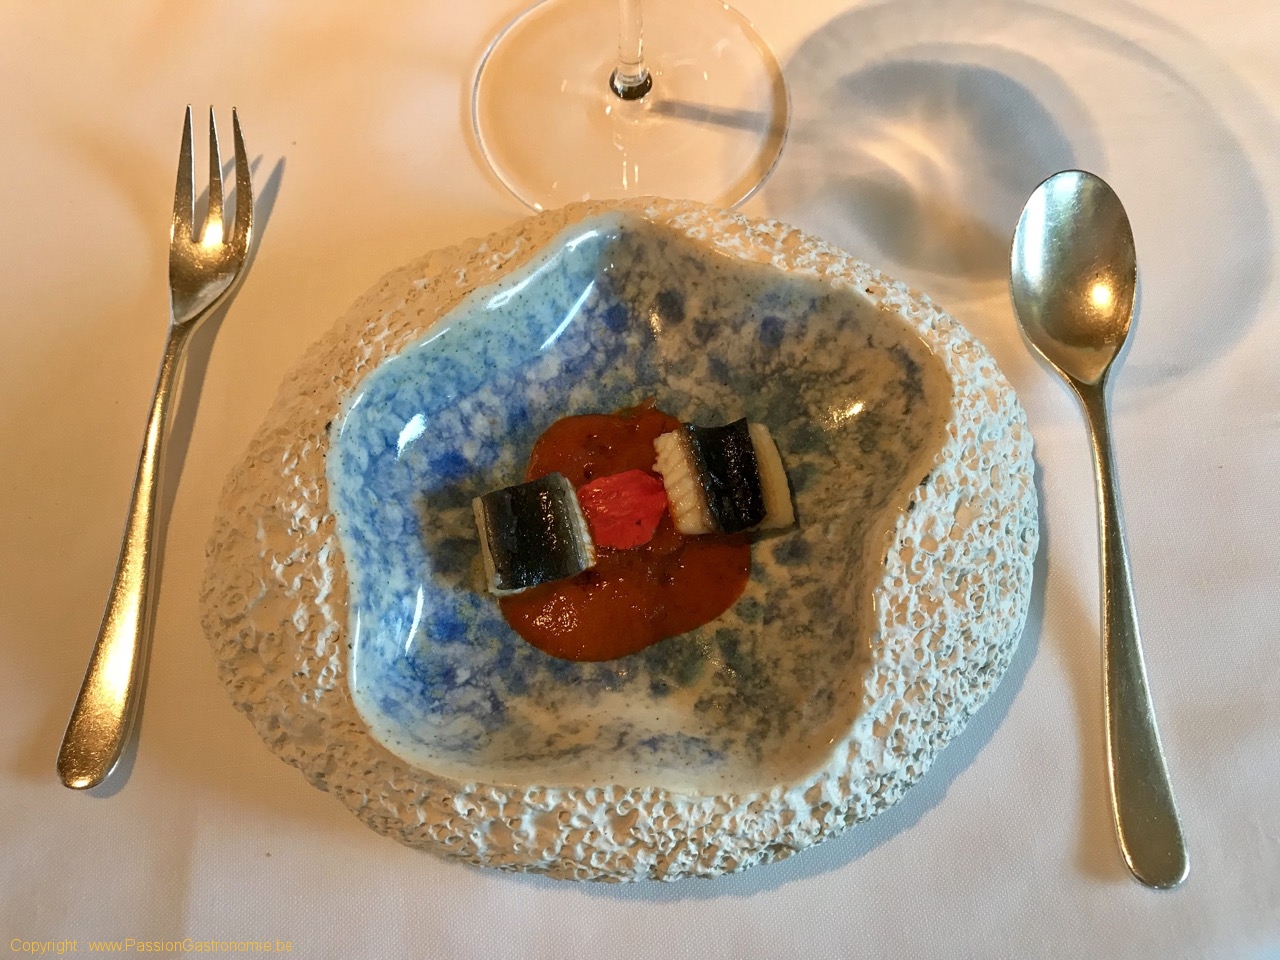 Restaurant Celler de Can Roca - Anguille séchée du Delta de l'Ebre avec mousse de poivron rouge et ail, anguille grillée, sofregit de pommes de terre sèches et huile de safran